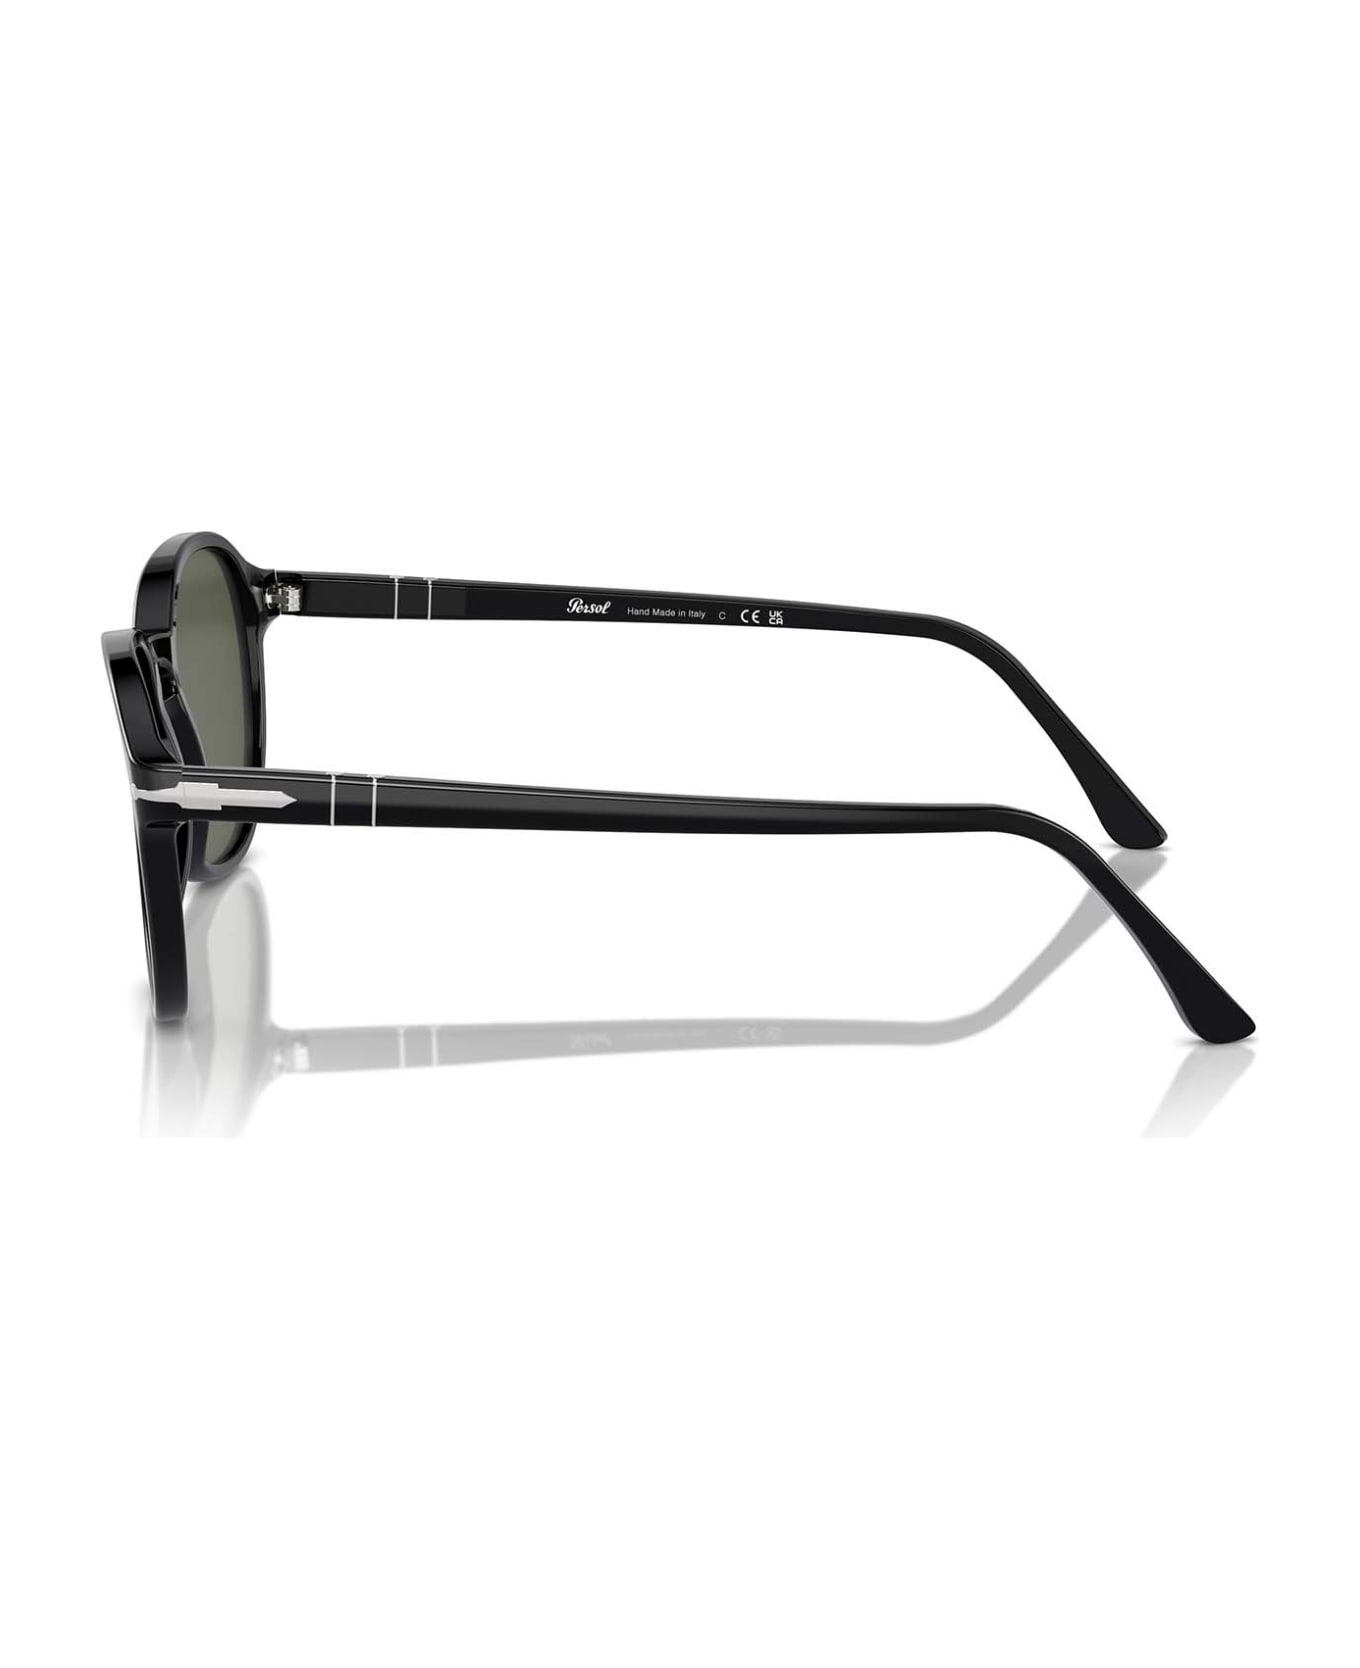 Persol Po3343s Black Sunglasses - Black